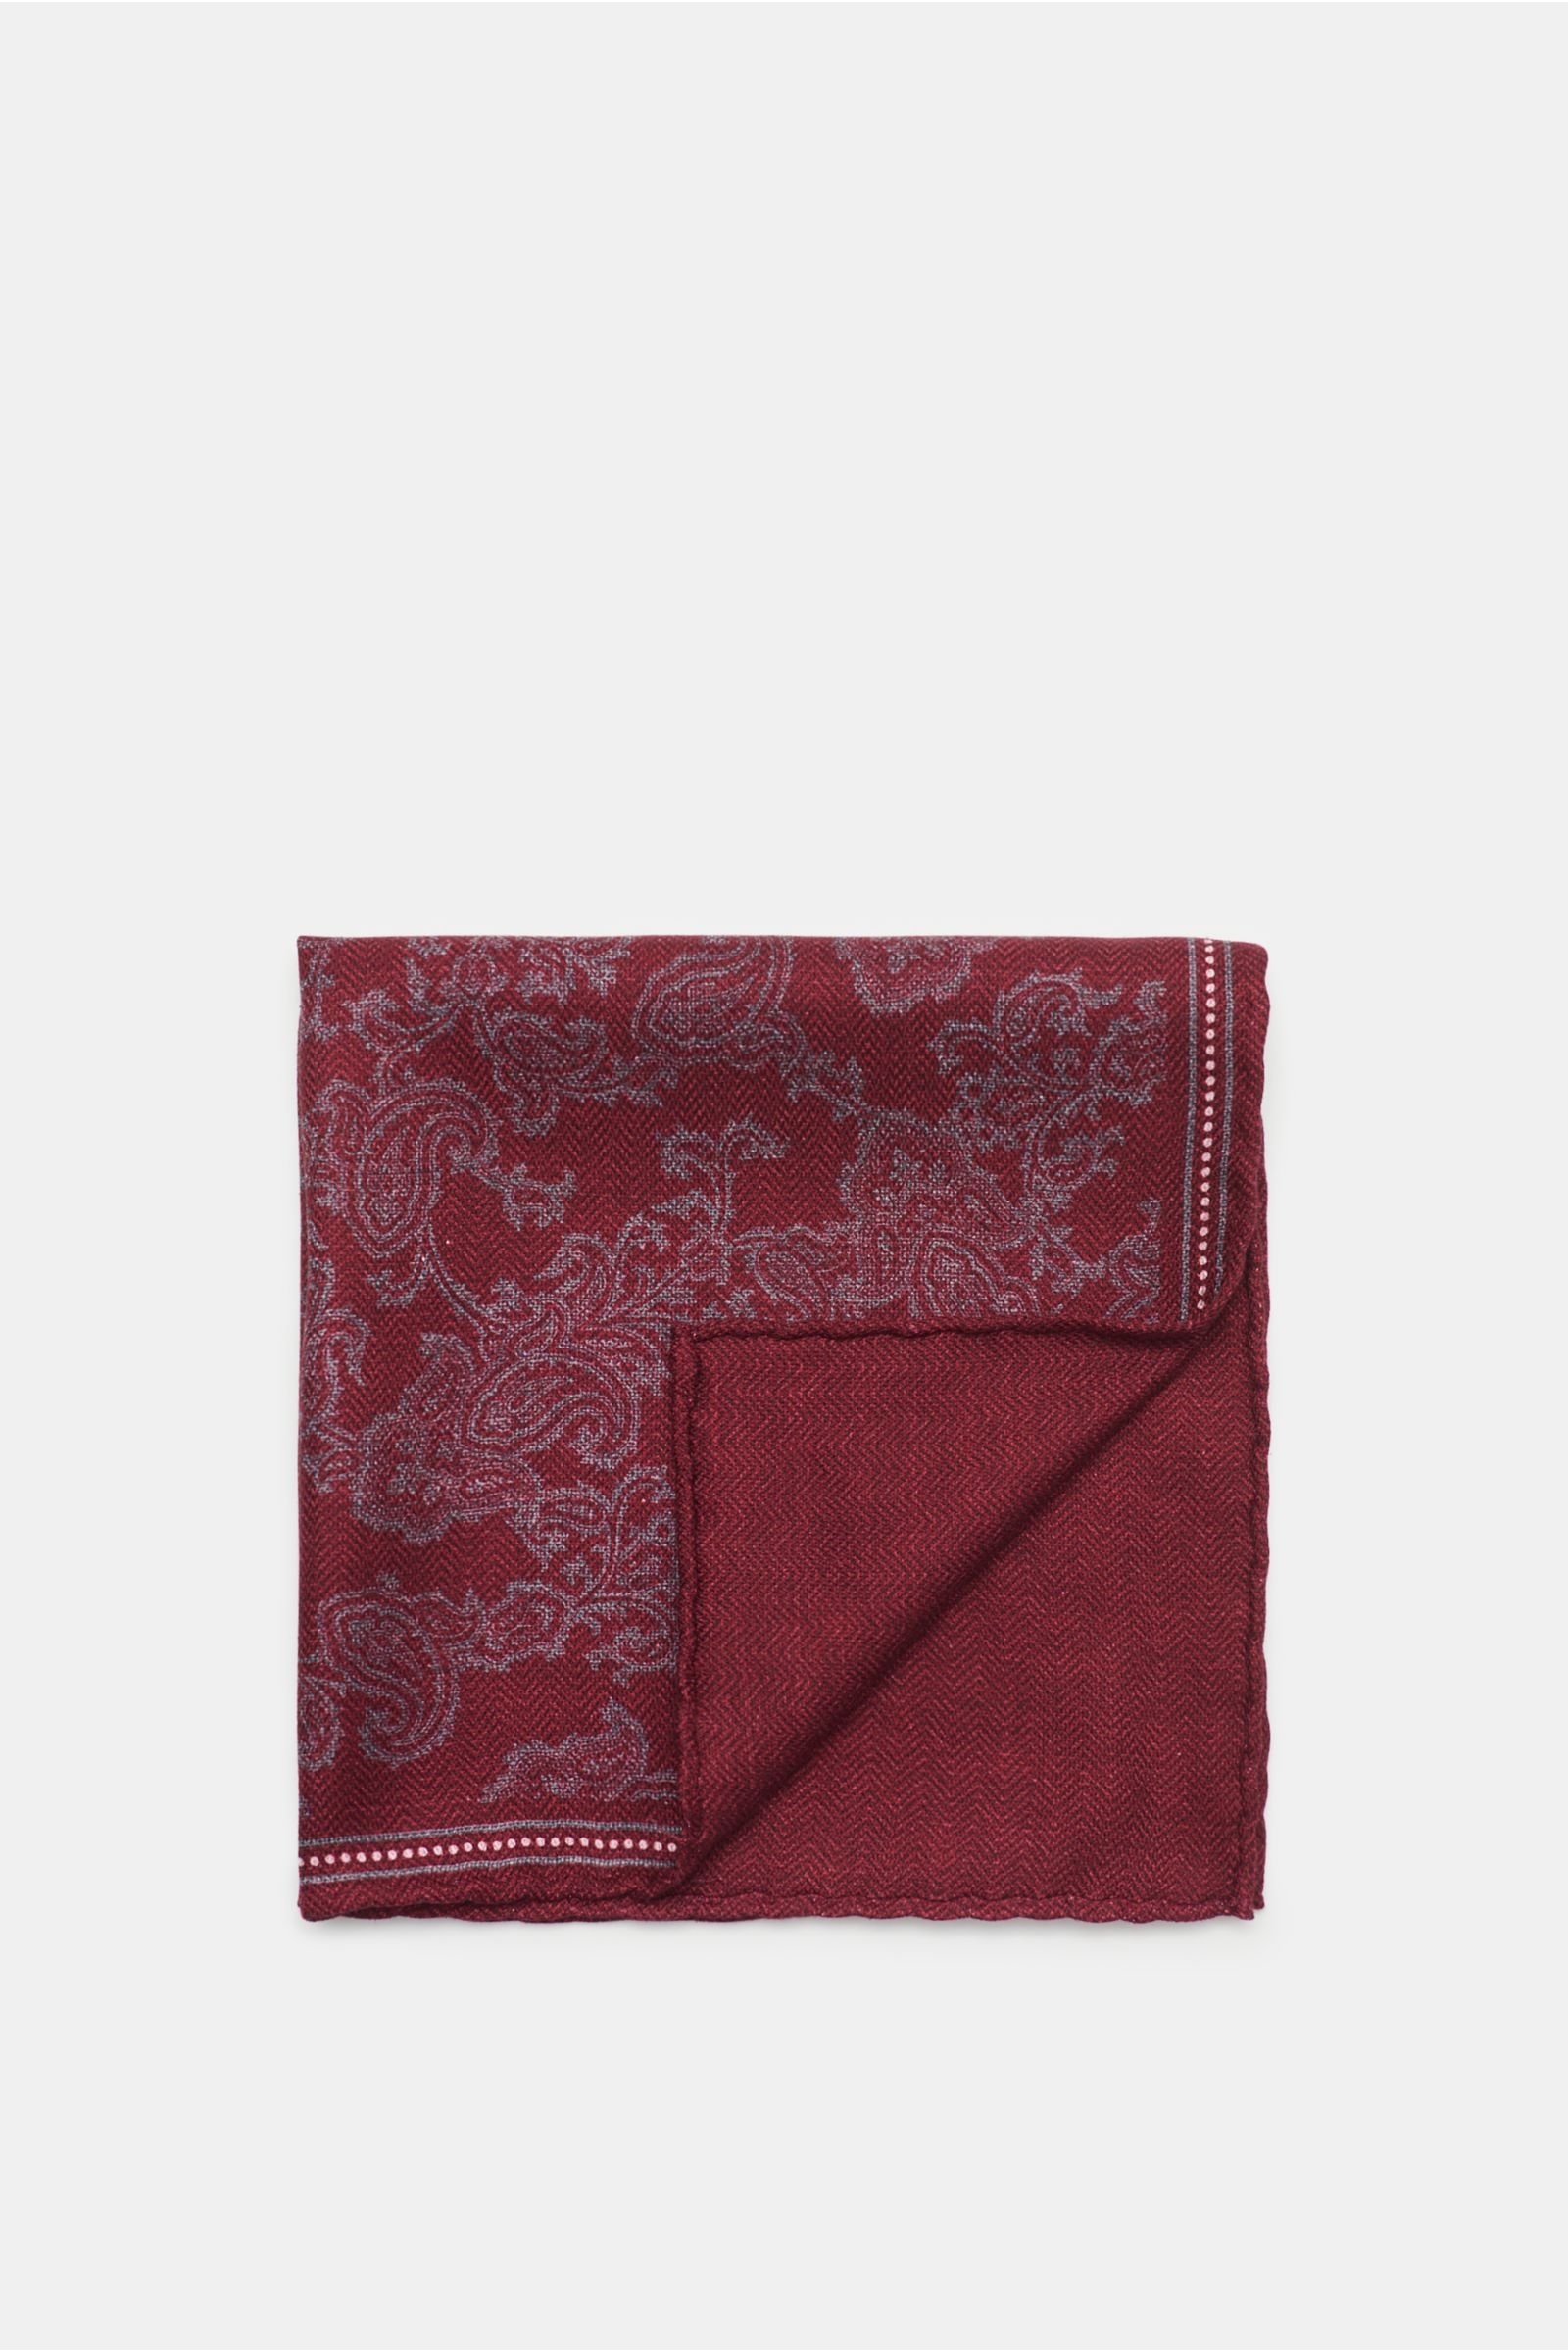 Pocket square burgundy/grey patterned